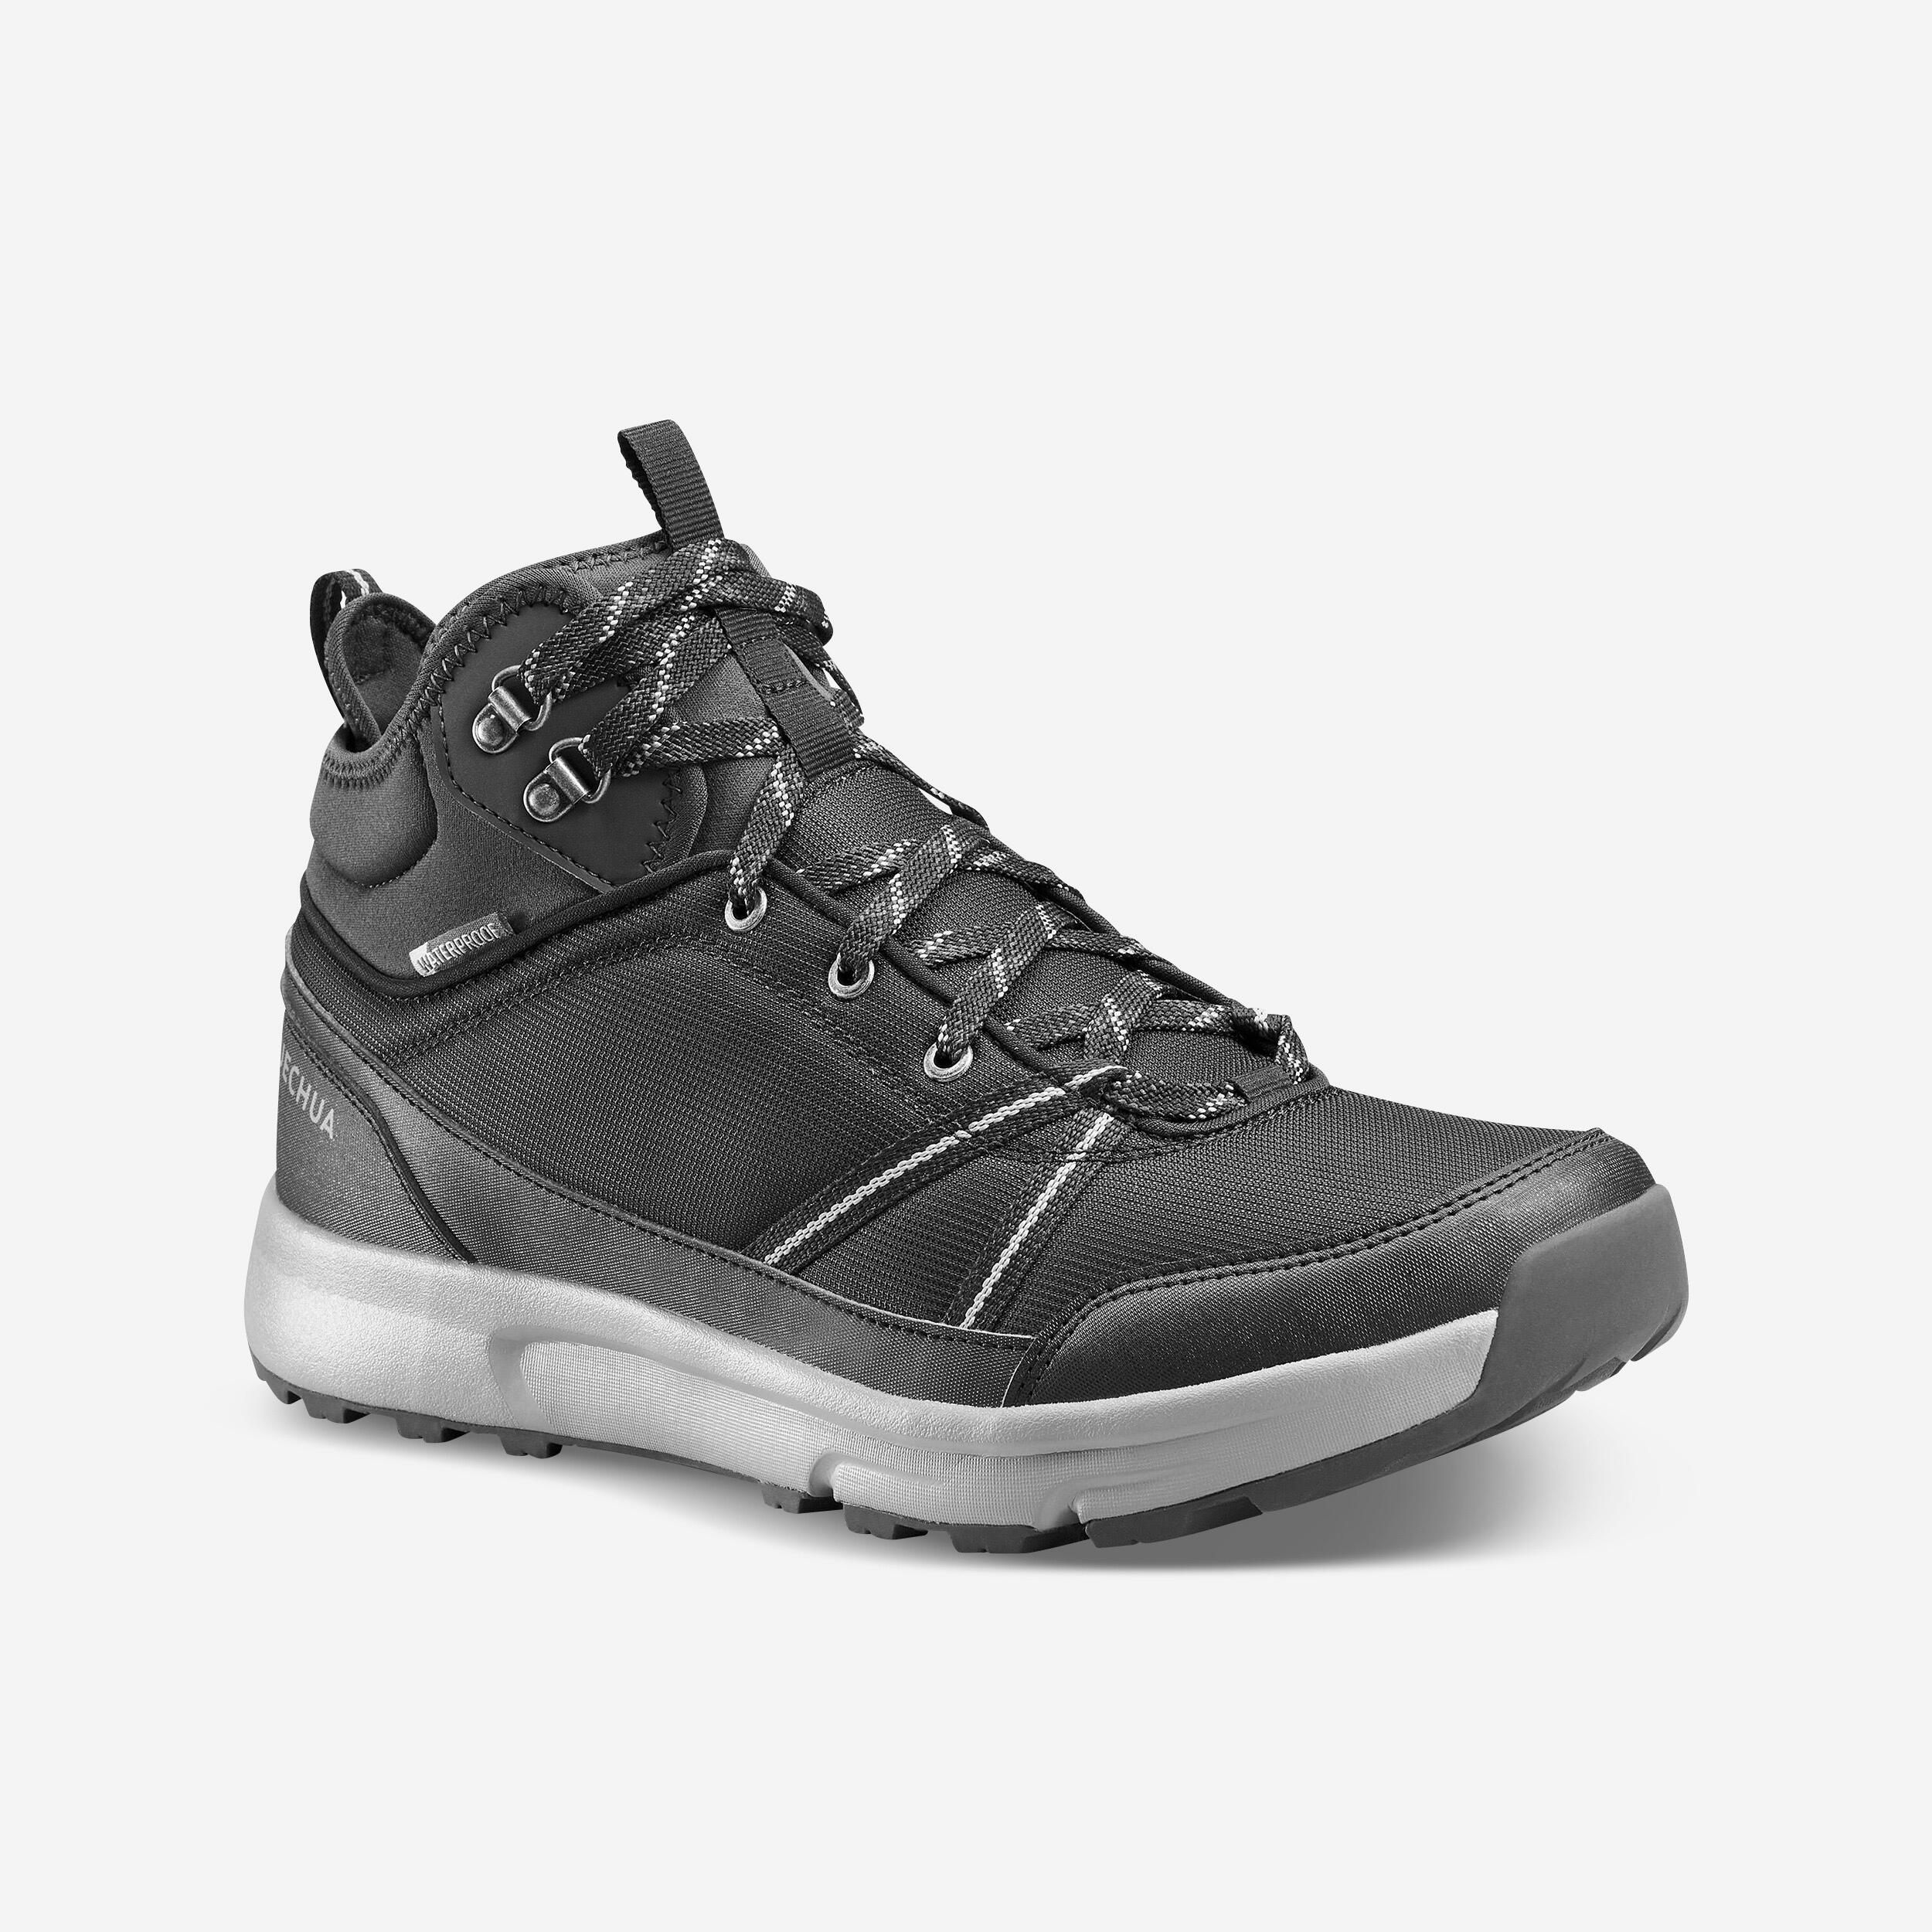 Men’s Waterproof Hiking Shoes  - NH 100 Black - QUECHUA